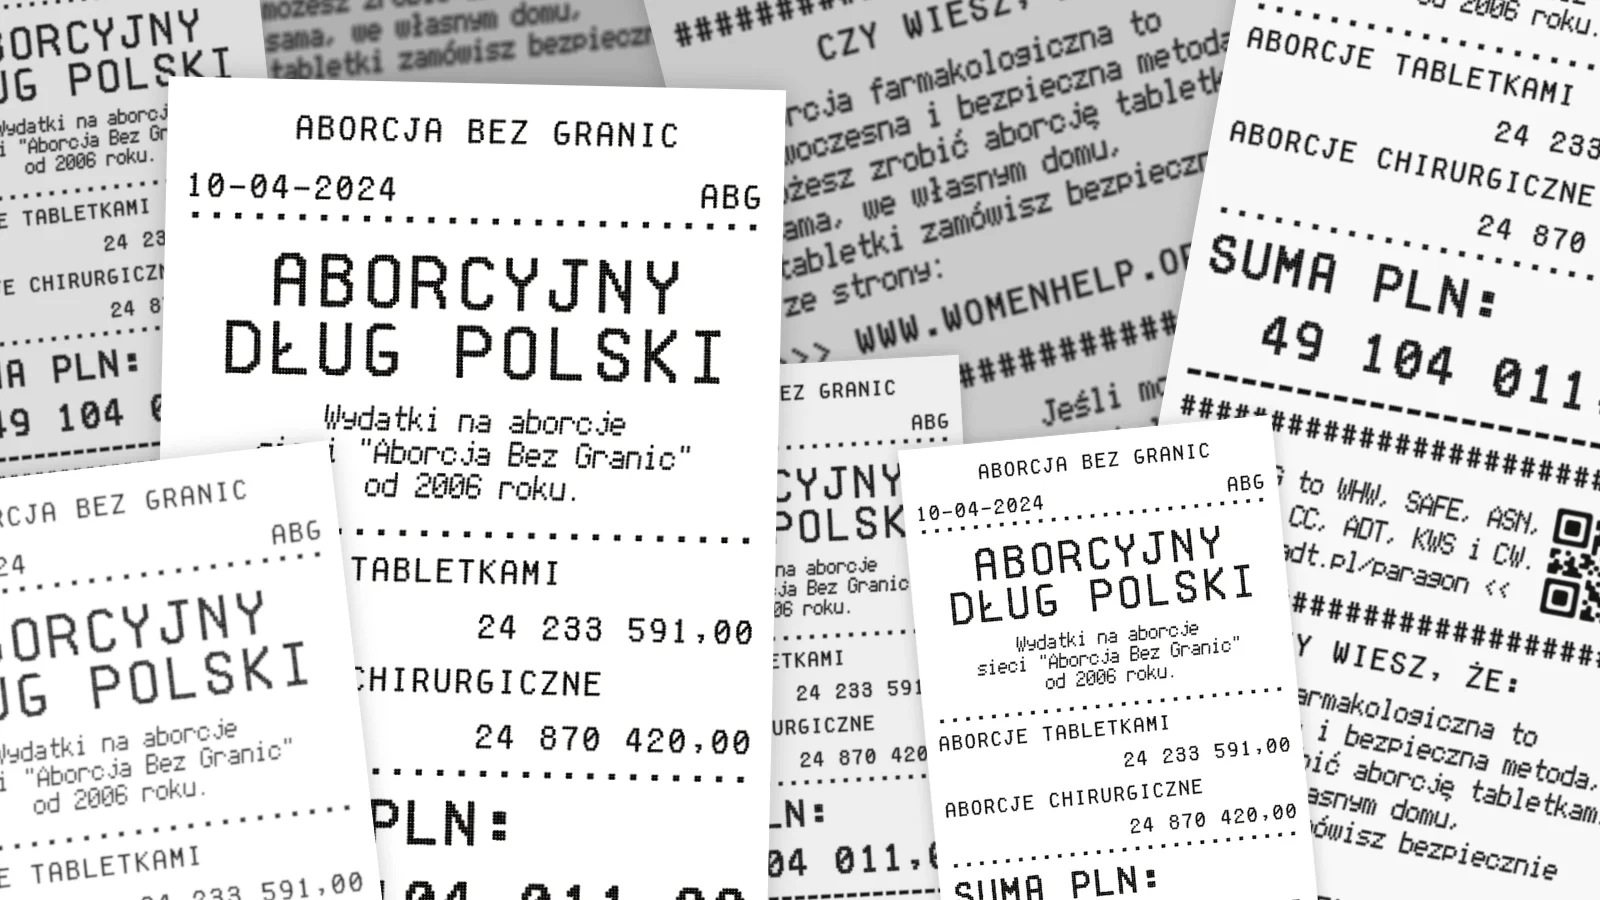 Paragony z Polskim Długiem Aborcyjnym wystawionym przez Aborcję Bez Granic.